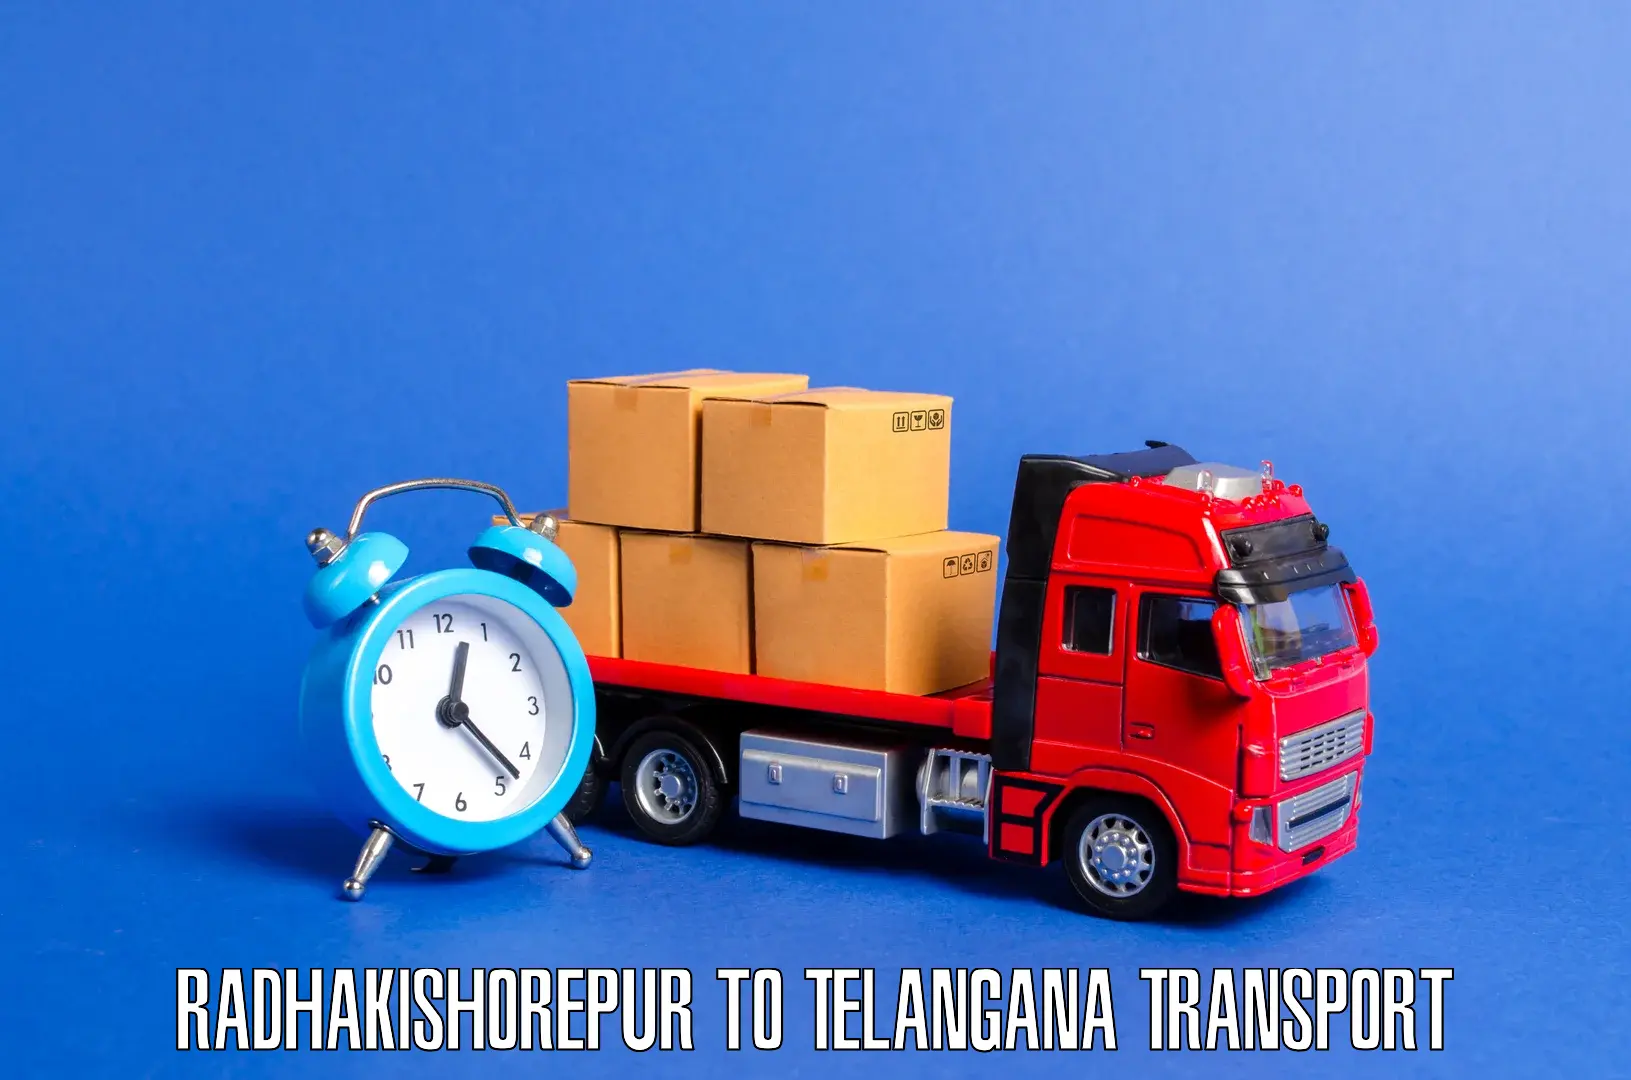 Daily transport service Radhakishorepur to Zahirabad